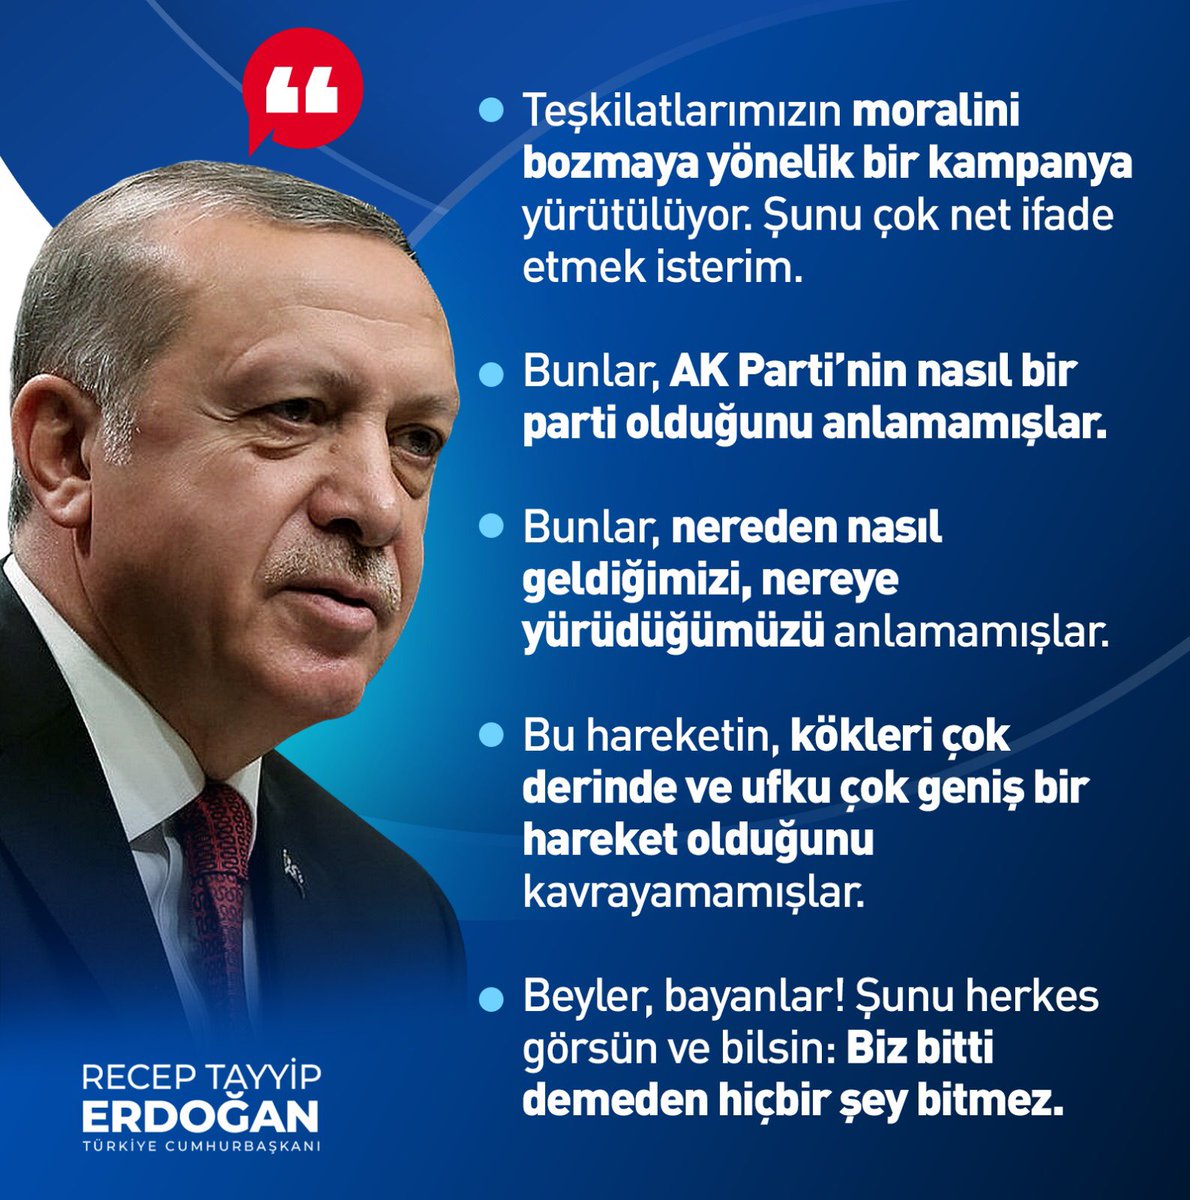 Genel Başkanımız ve Cumhurbaşkanımız Sayın Recep Tayyip Erdoğan: Şunu herkes görsün ve bilsin, biz bitti demeden hiçbir şey bitmez, bitmeyecektir.